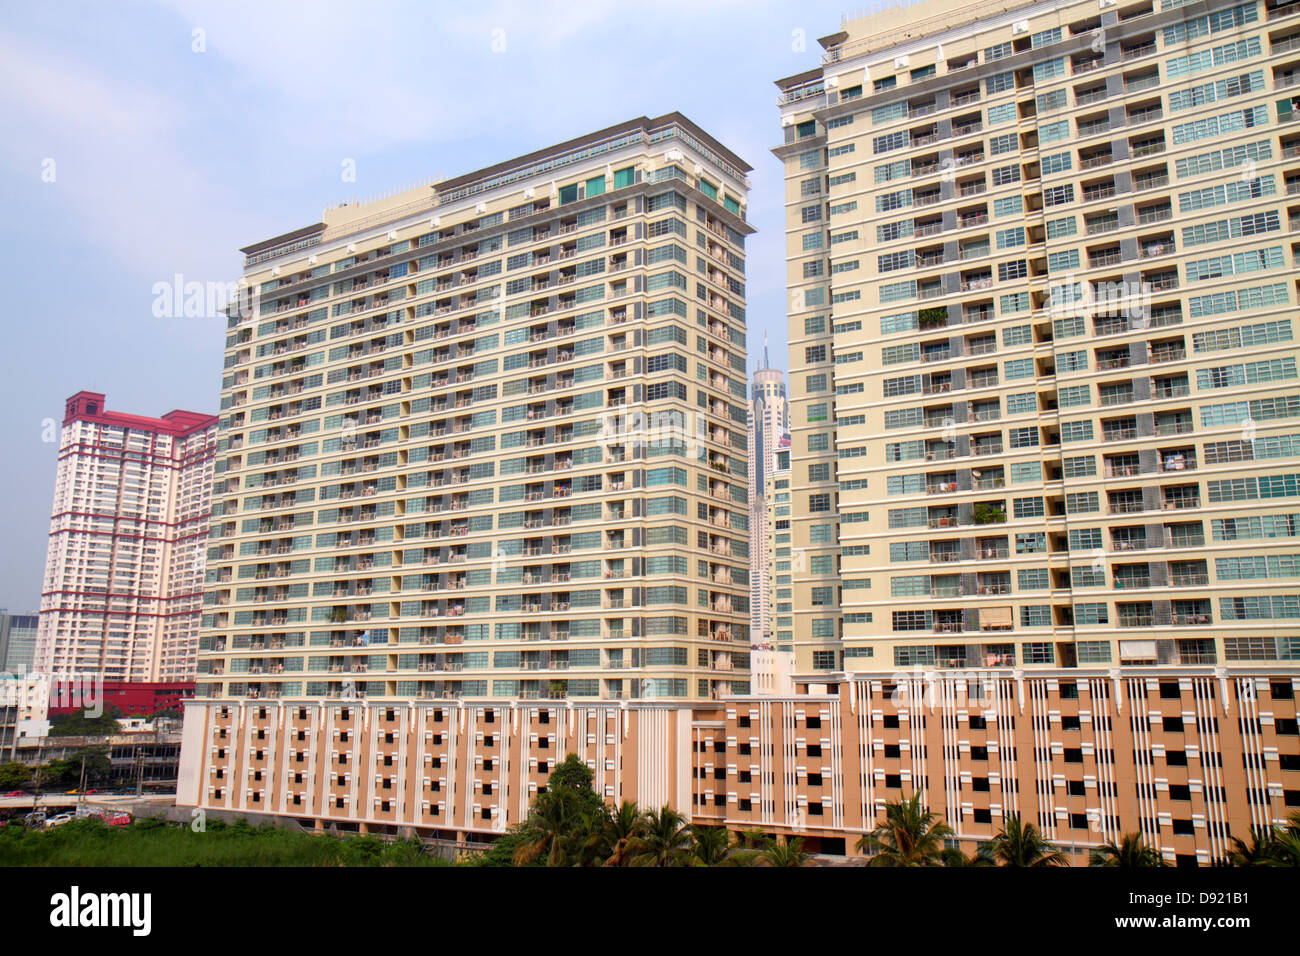 Thaïlande,Thai,Bangkok,Ratchathewi,hauteur gratte-ciel gratte-ciel bâtiment immeubles condominium appartement résidentiel appartements logement, résidentiel Banque D'Images